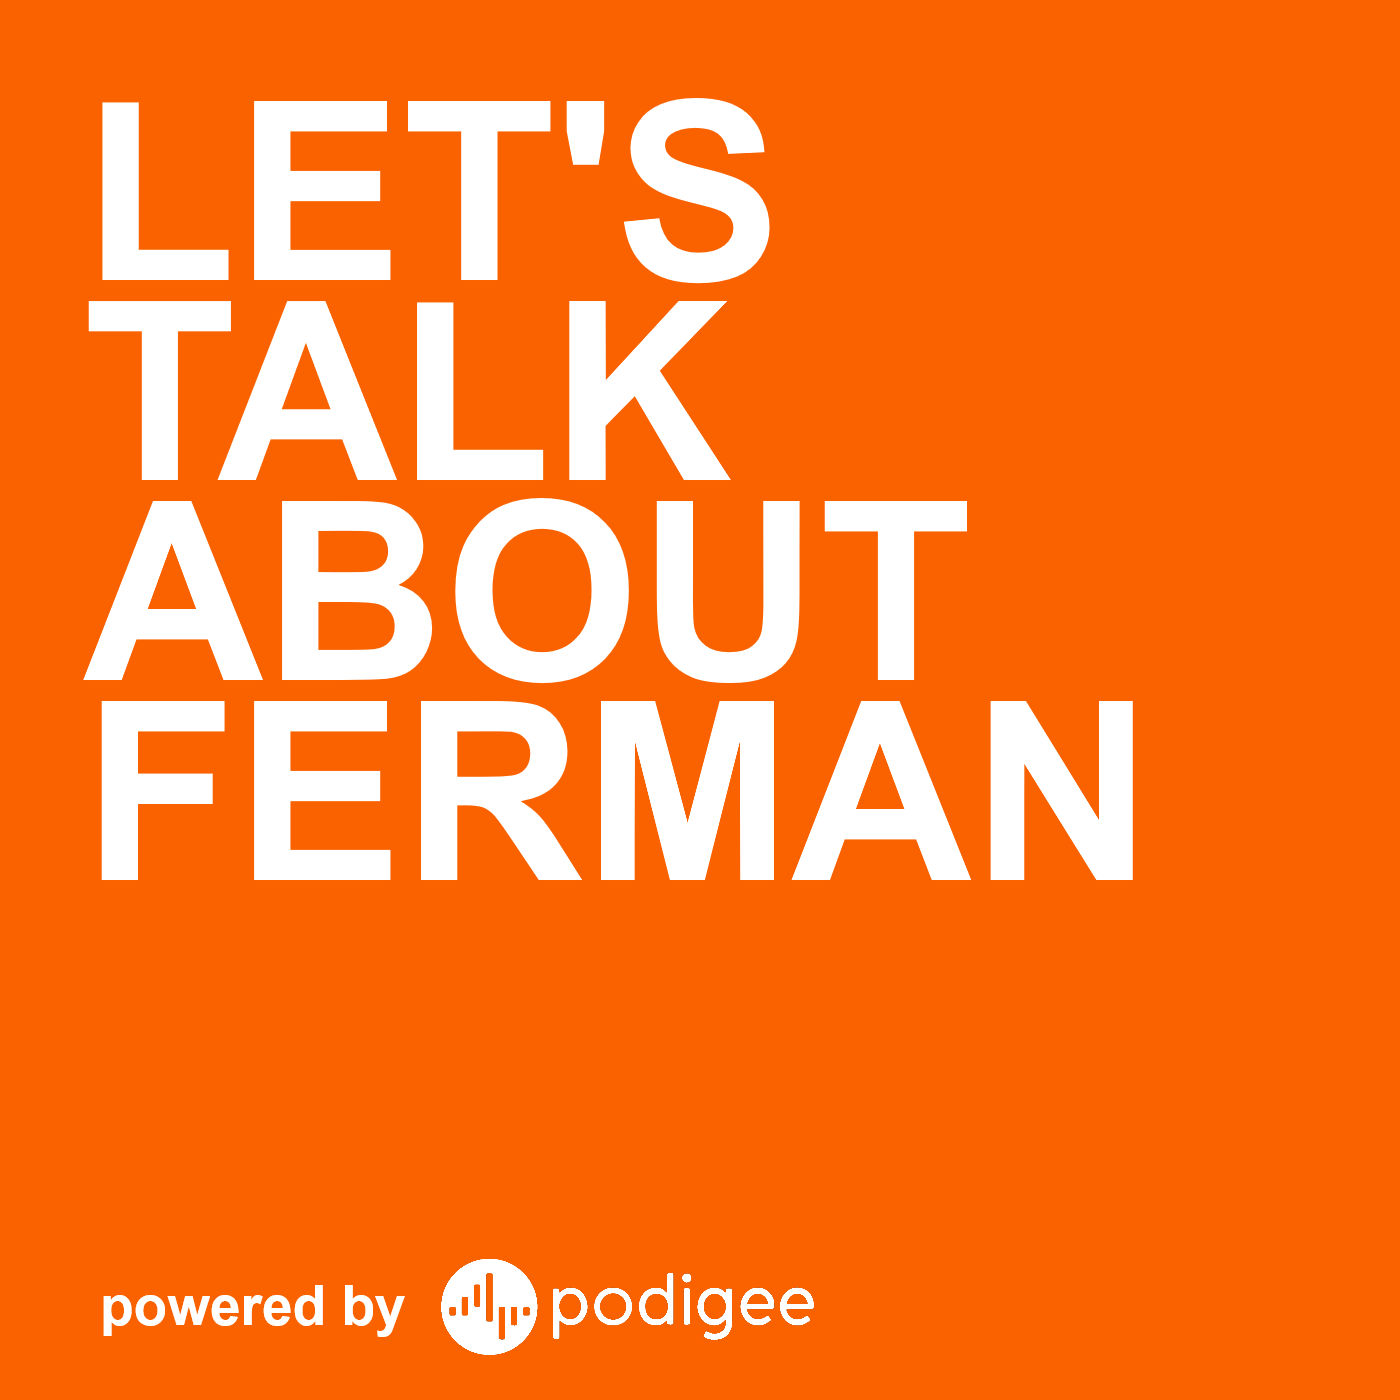 Let's talk about FERMAN